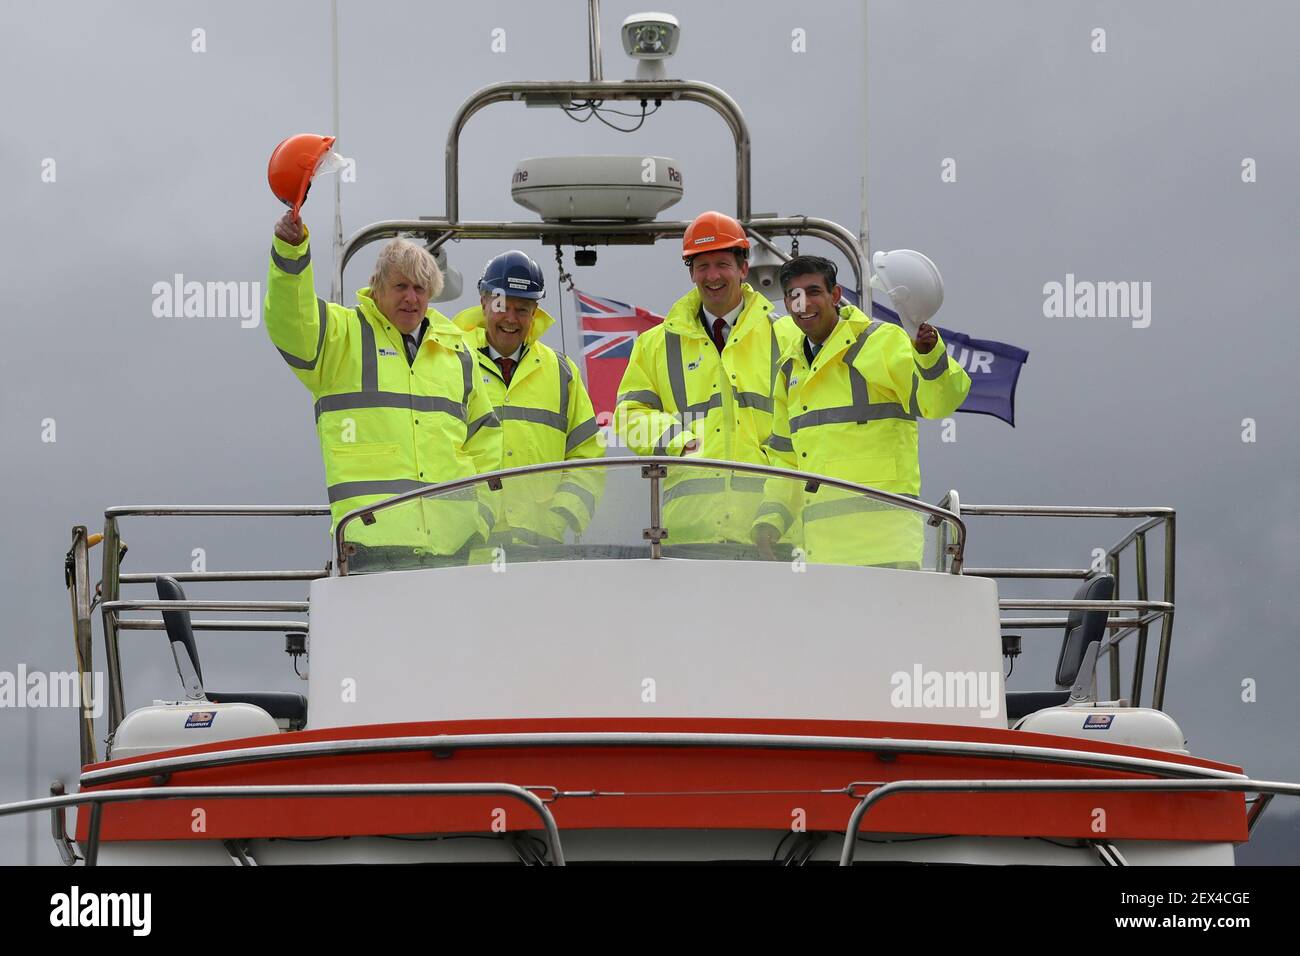 Il primo ministro Boris Johnson e il Cancelliere dello scacchiere, Rishi Sunak, a bordo di una barca sul fiume Tees durante una visita a Teesport a Middlesbrough. Data immagine: Giovedì 4 marzo 2021. Foto Stock